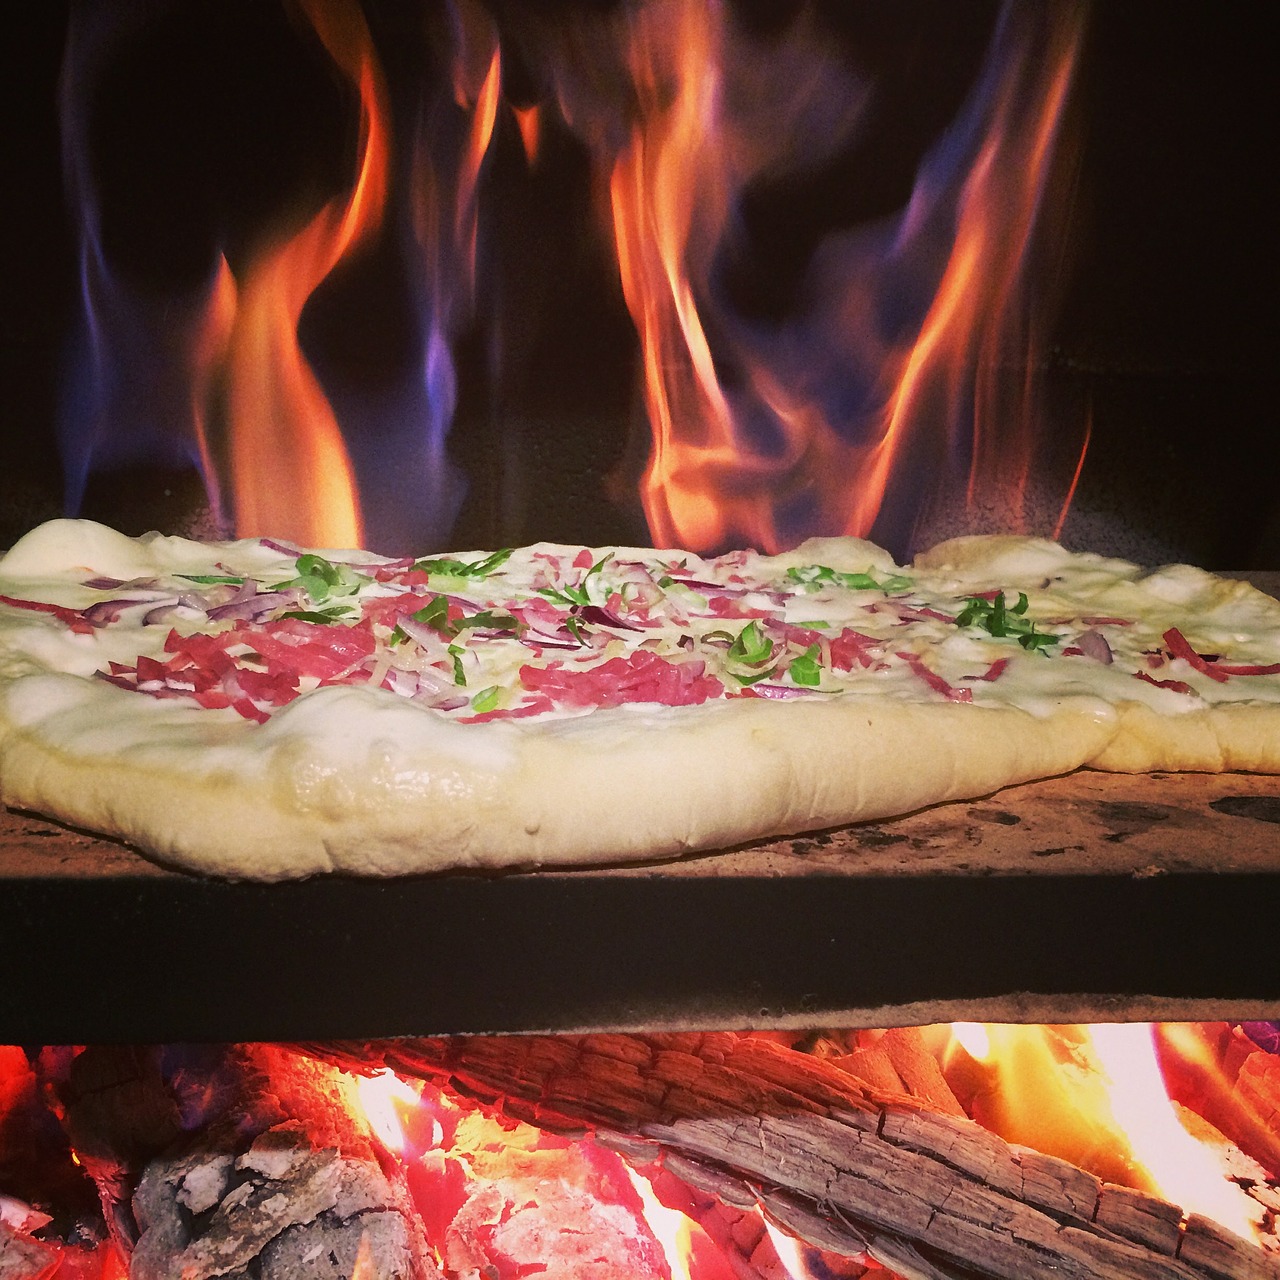 tarte flambée pizza wood burning stove free photo